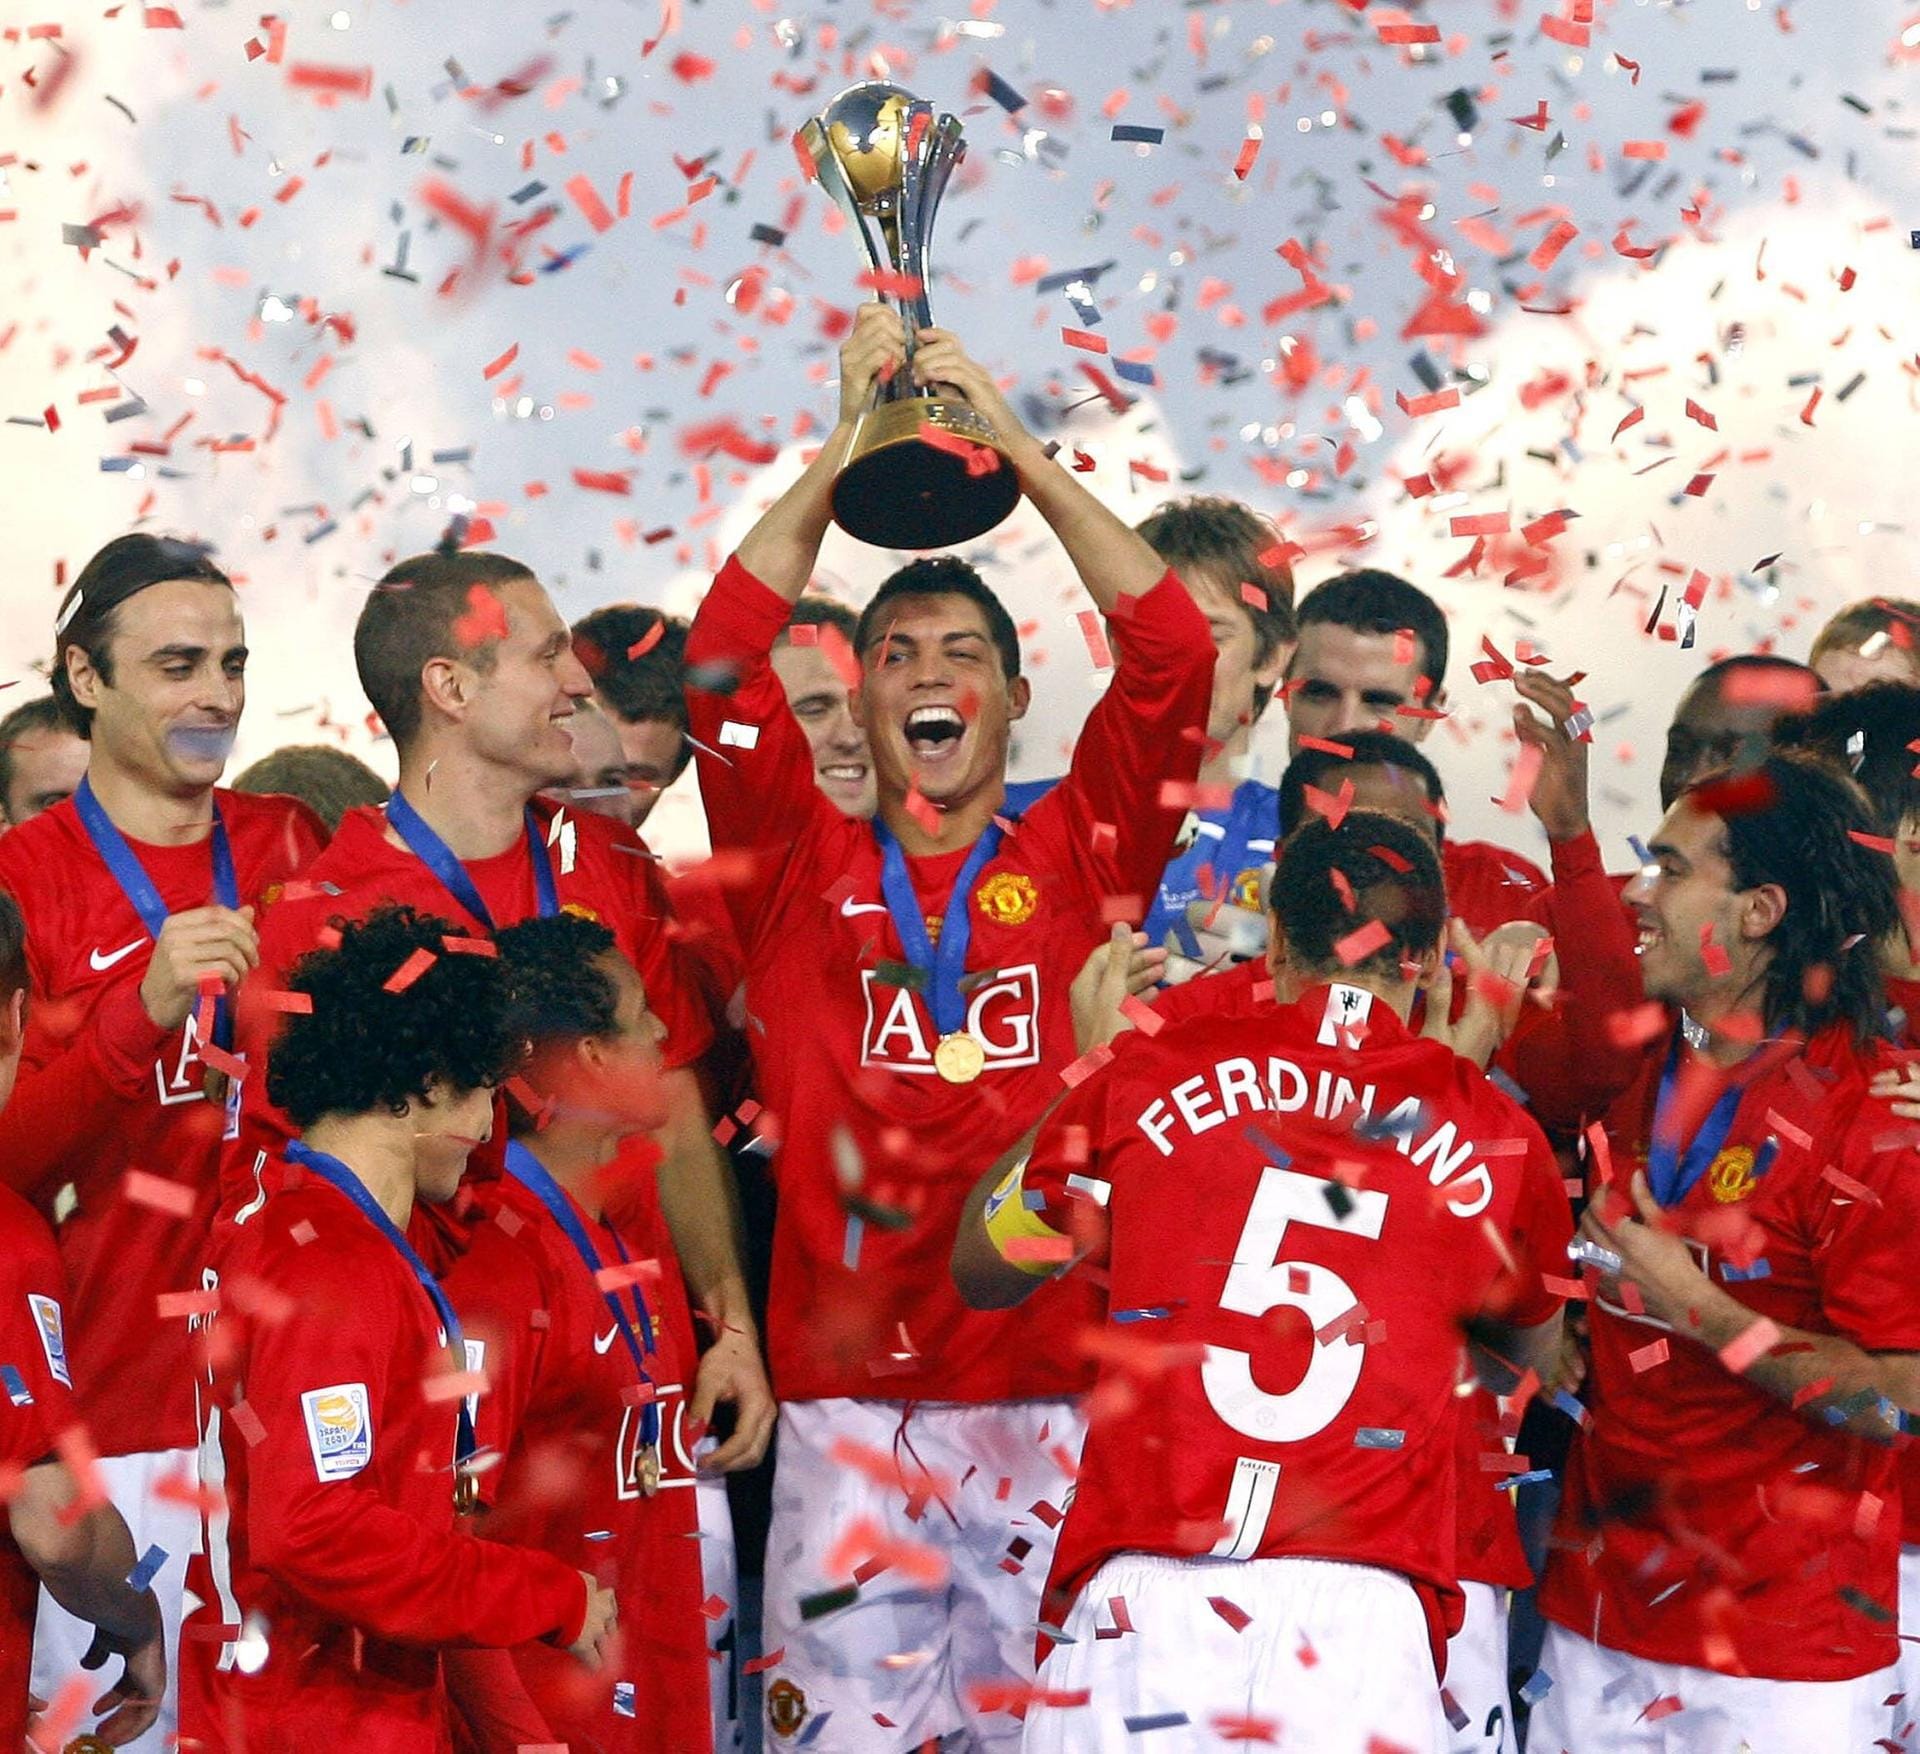 Manchester United: Von 2005 bis 2008 stellte Japan durchgehend den Austragungsort des Wettbewerbs. So fand auch 2008 die Klub-WM im asiatischen Raum statt. In diesem Jahr konnte sich der englische Erstligist Manchester United im Finale mit einem Tor Unterschied gegen LDU Quito (1:0) durchsetzen und die Trophäe erneut mit nach Europa nehmen.